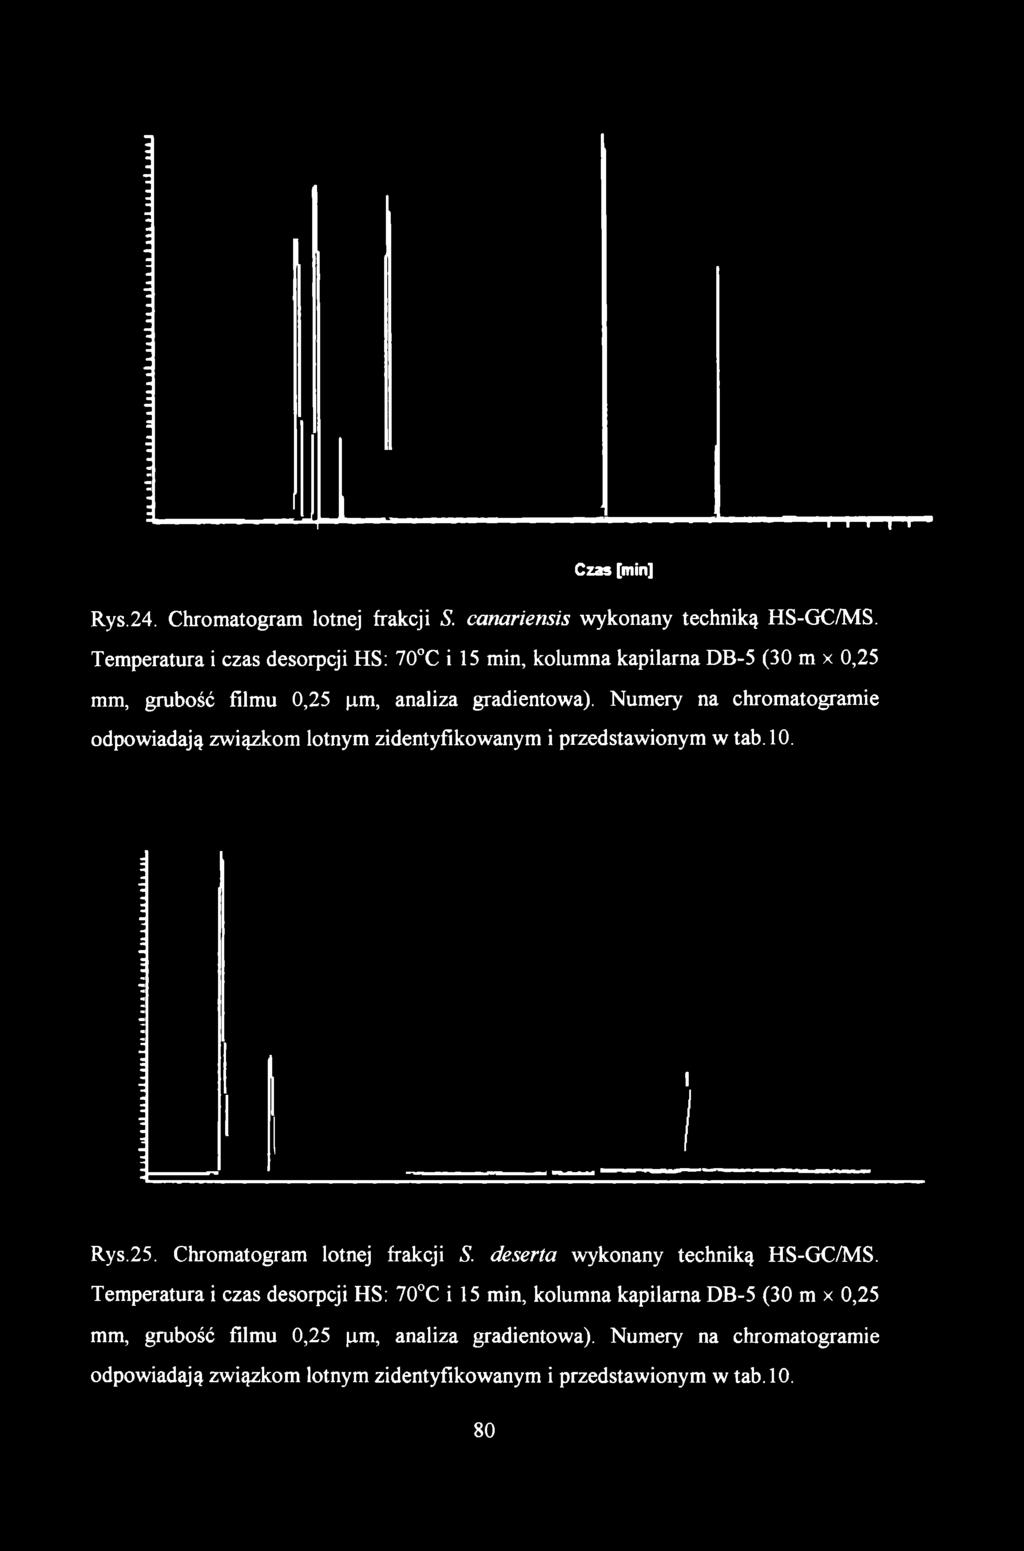 Czas [min] Rys.24. Chromatogram lotnej frakcji S. canariensis wykonany techniką HS-GC/MS. Temperatura i czas desorpcji HS: 70 C i 15 min, kolumna kapilarna DB-5 (30 m x 0,25 mm, grubość filmu 0,25 (j.